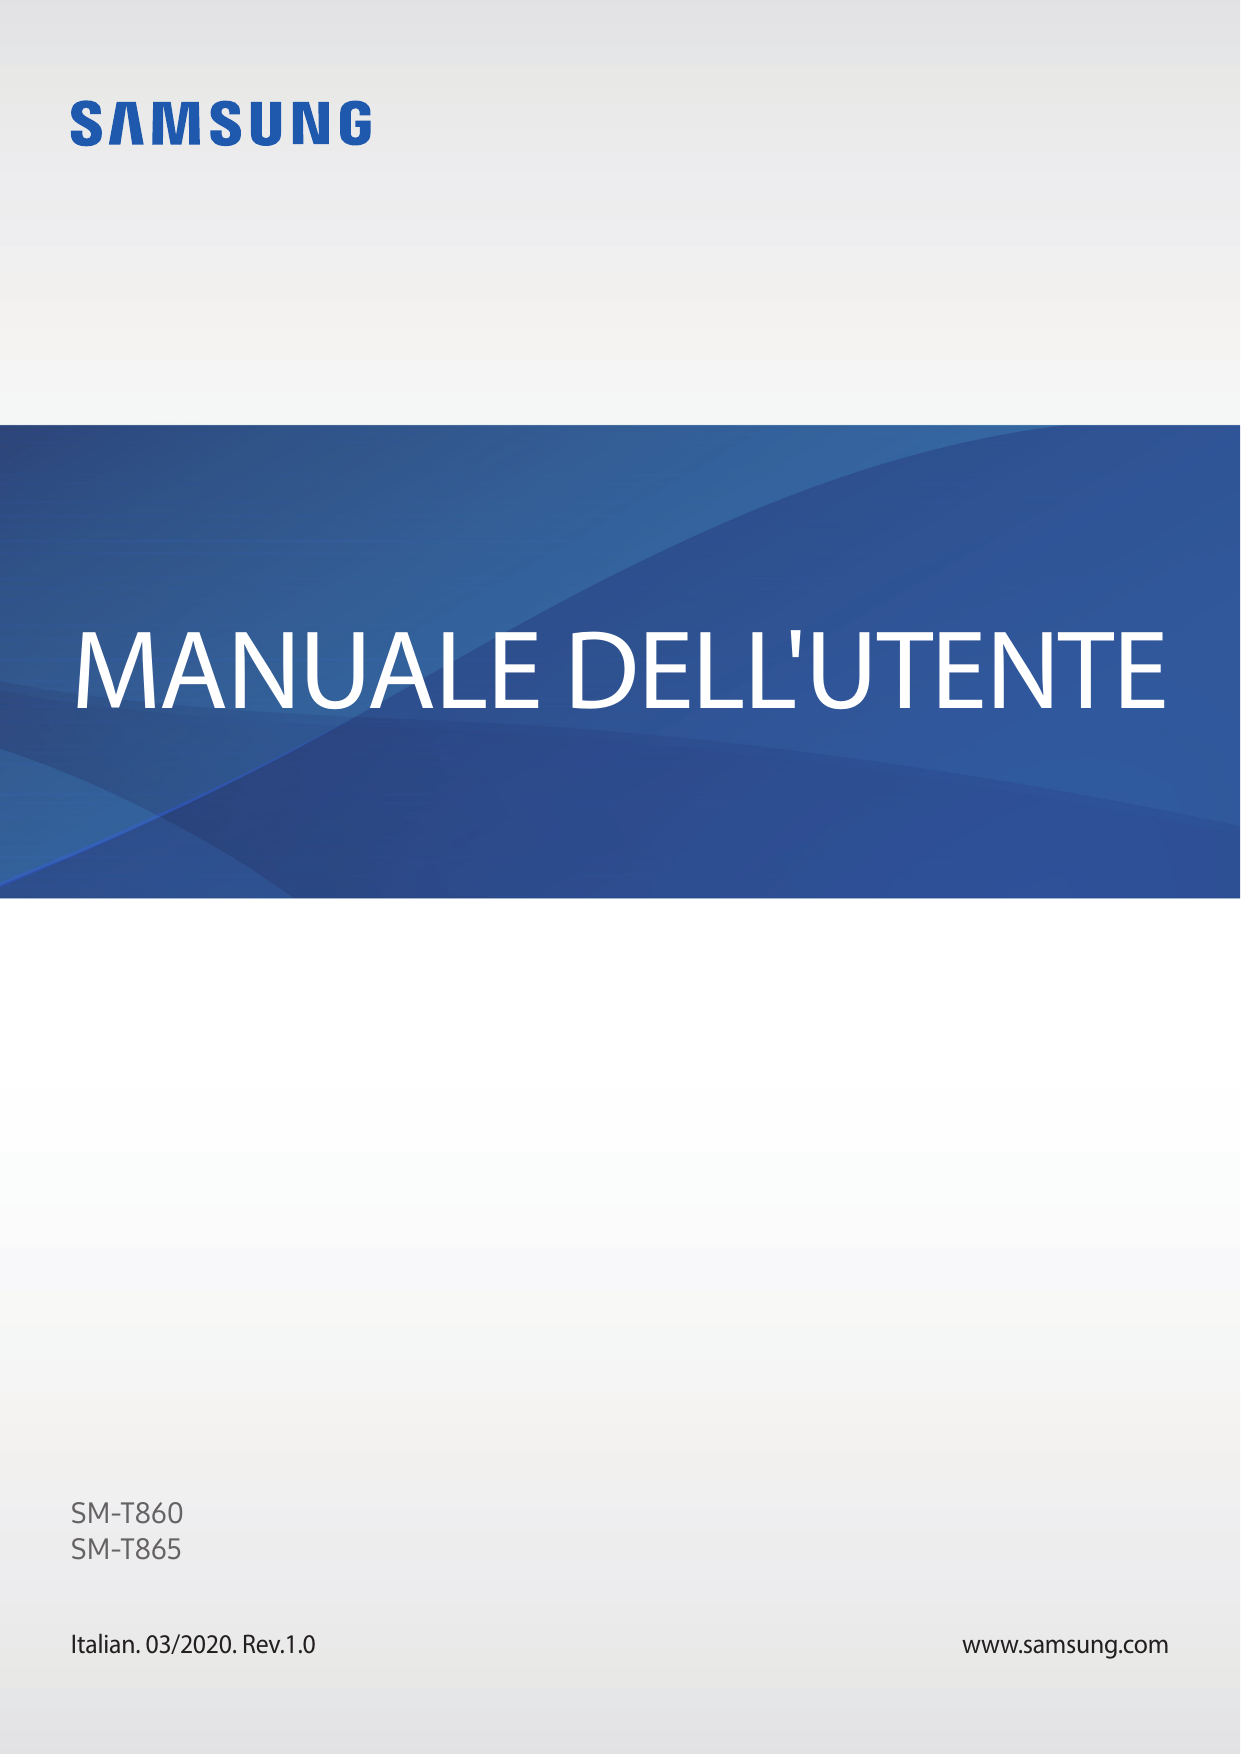 MANUALE DELL'UTENTESM-T860SM-T865Italian. 03/2020. Rev.1.0www.samsung.com